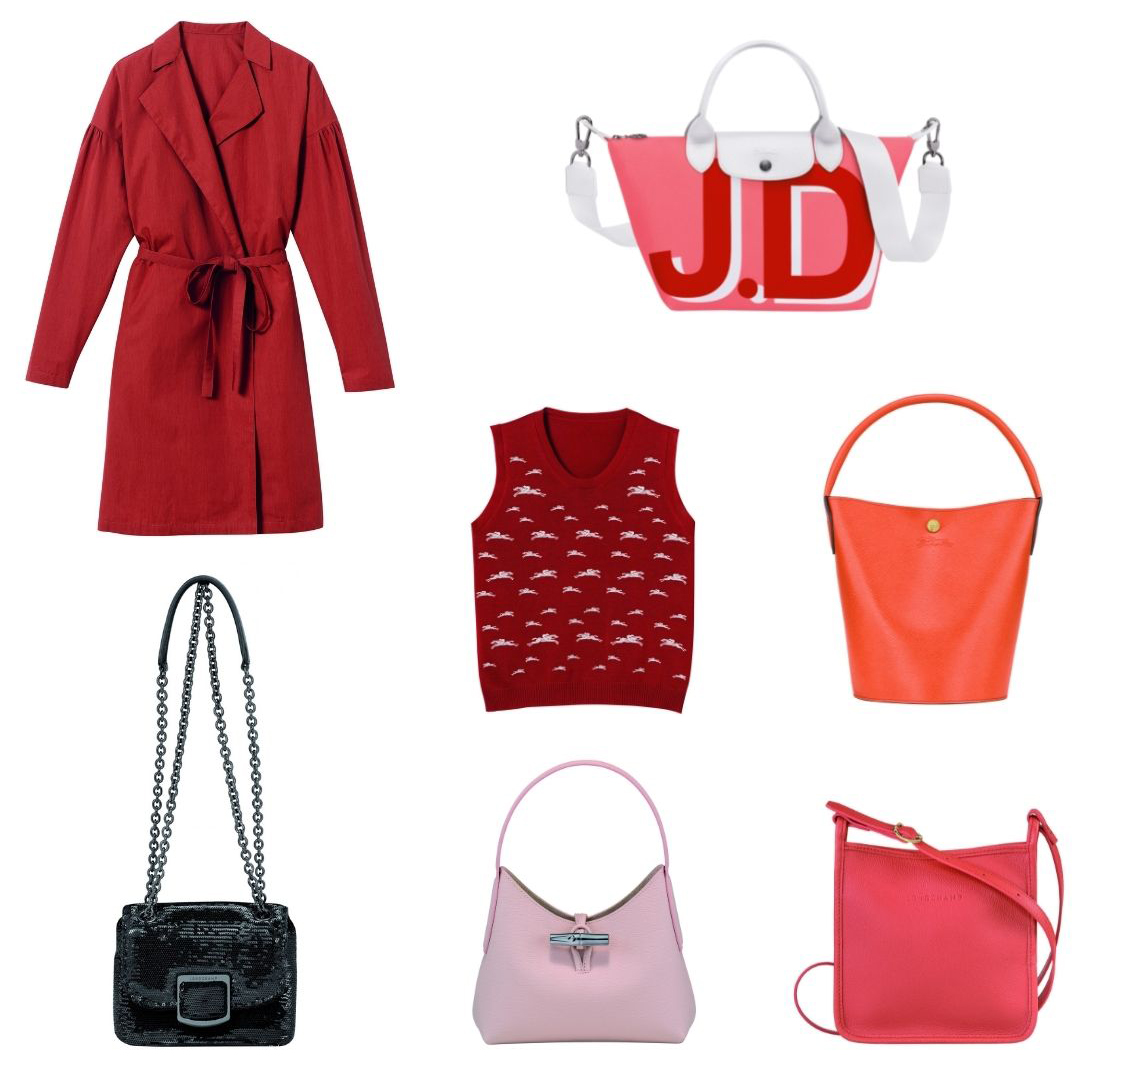 Longchamp - Las prendas y complementos más deseados para San Valentín